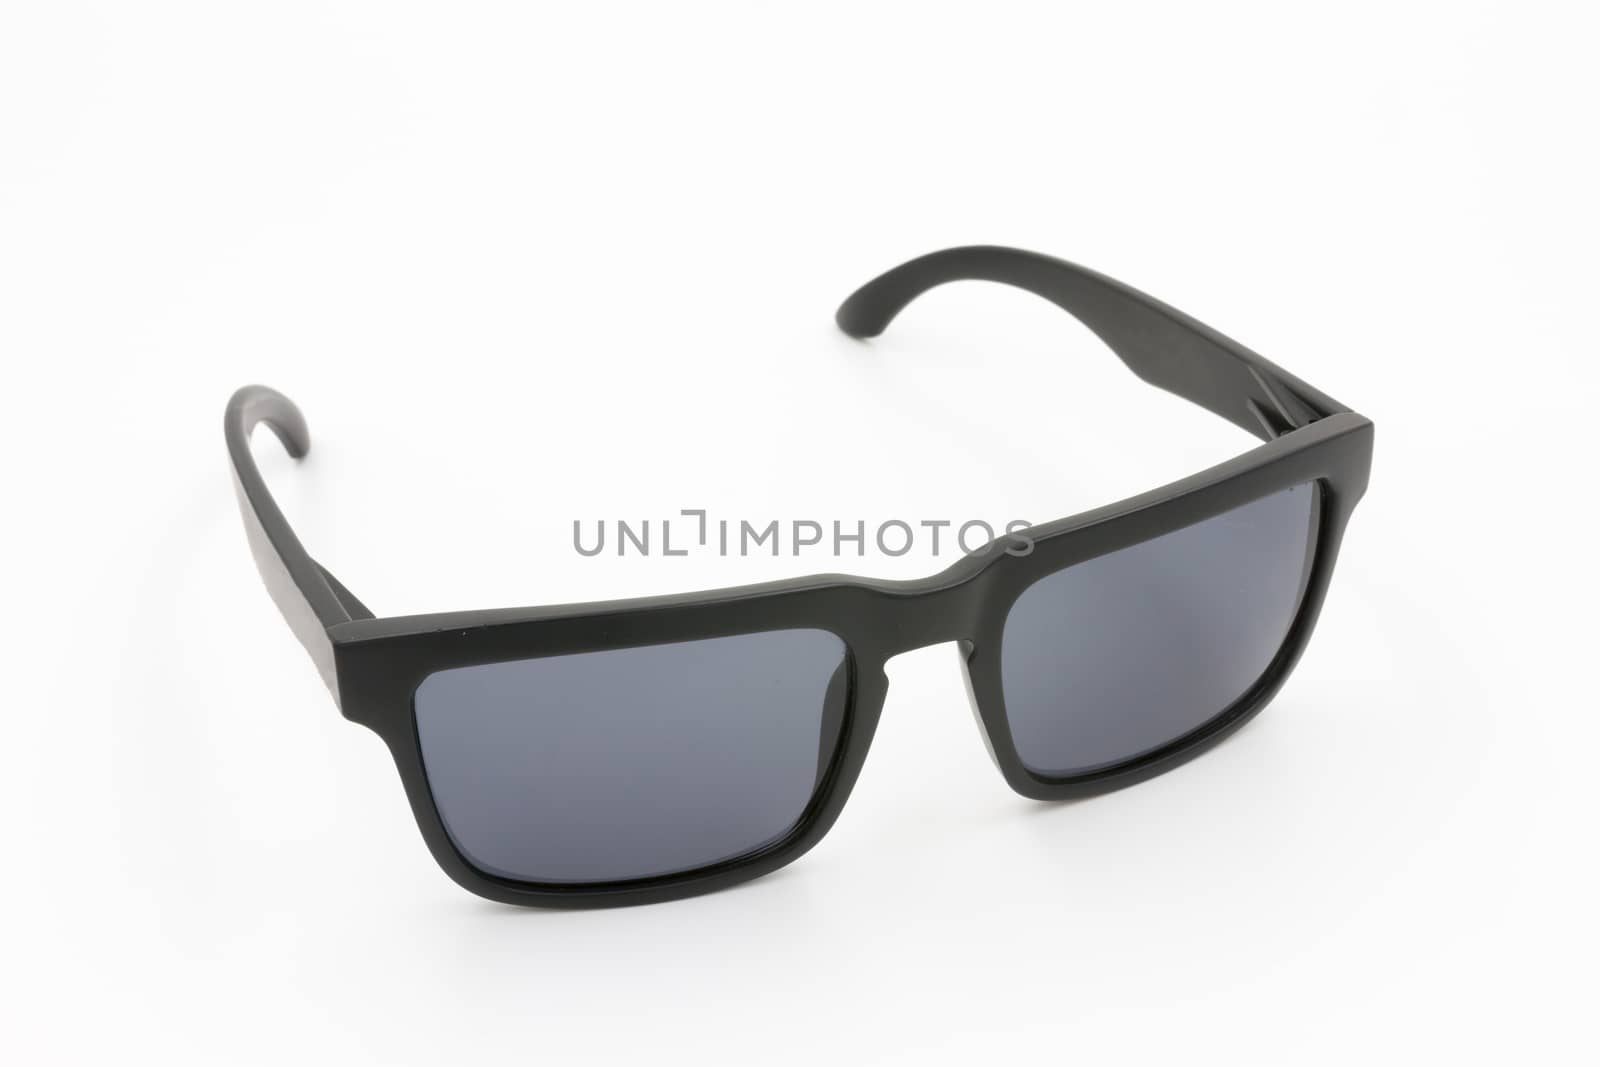 Sunglasses eyewear  on white background